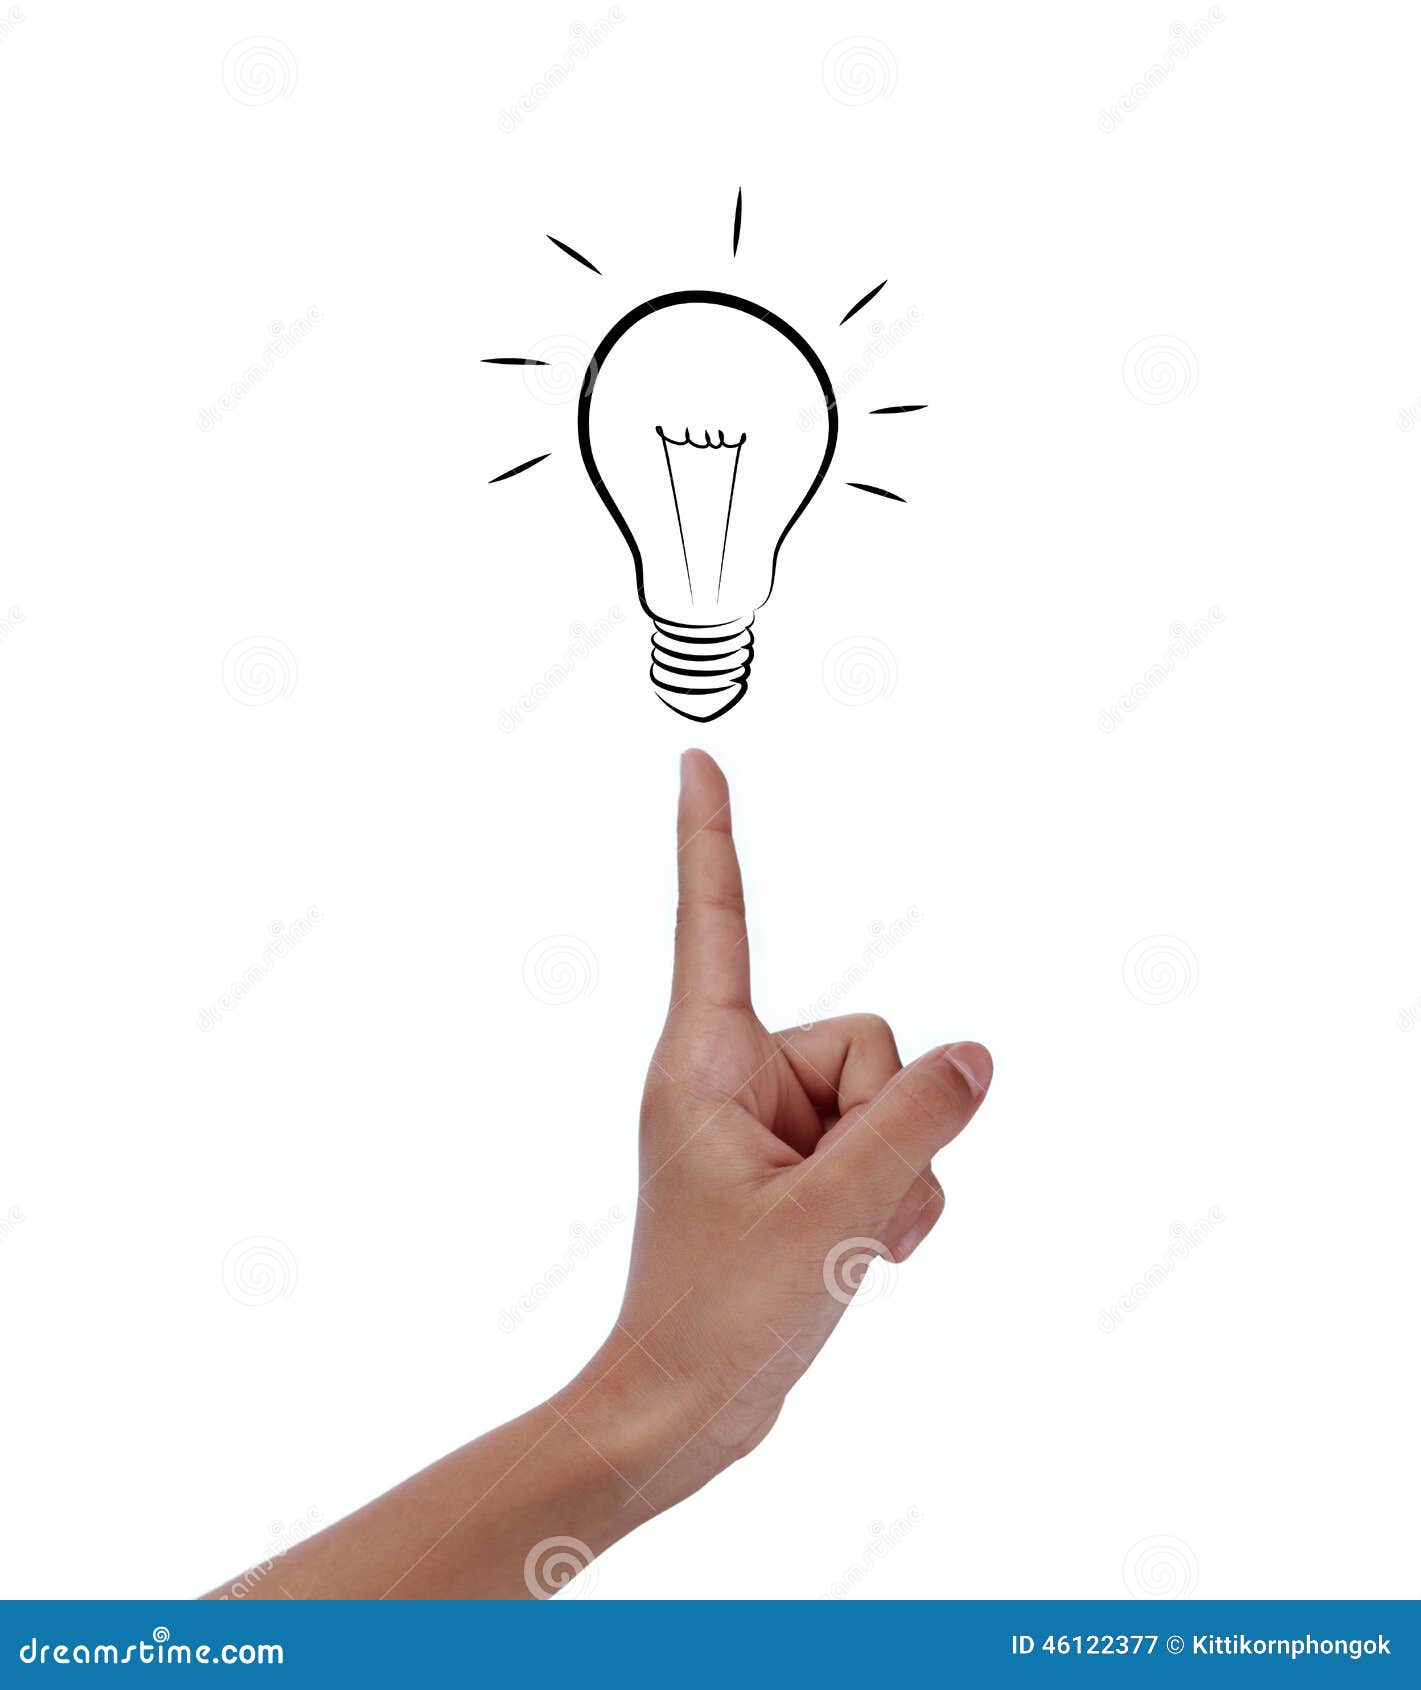 bulb light on women fingertip